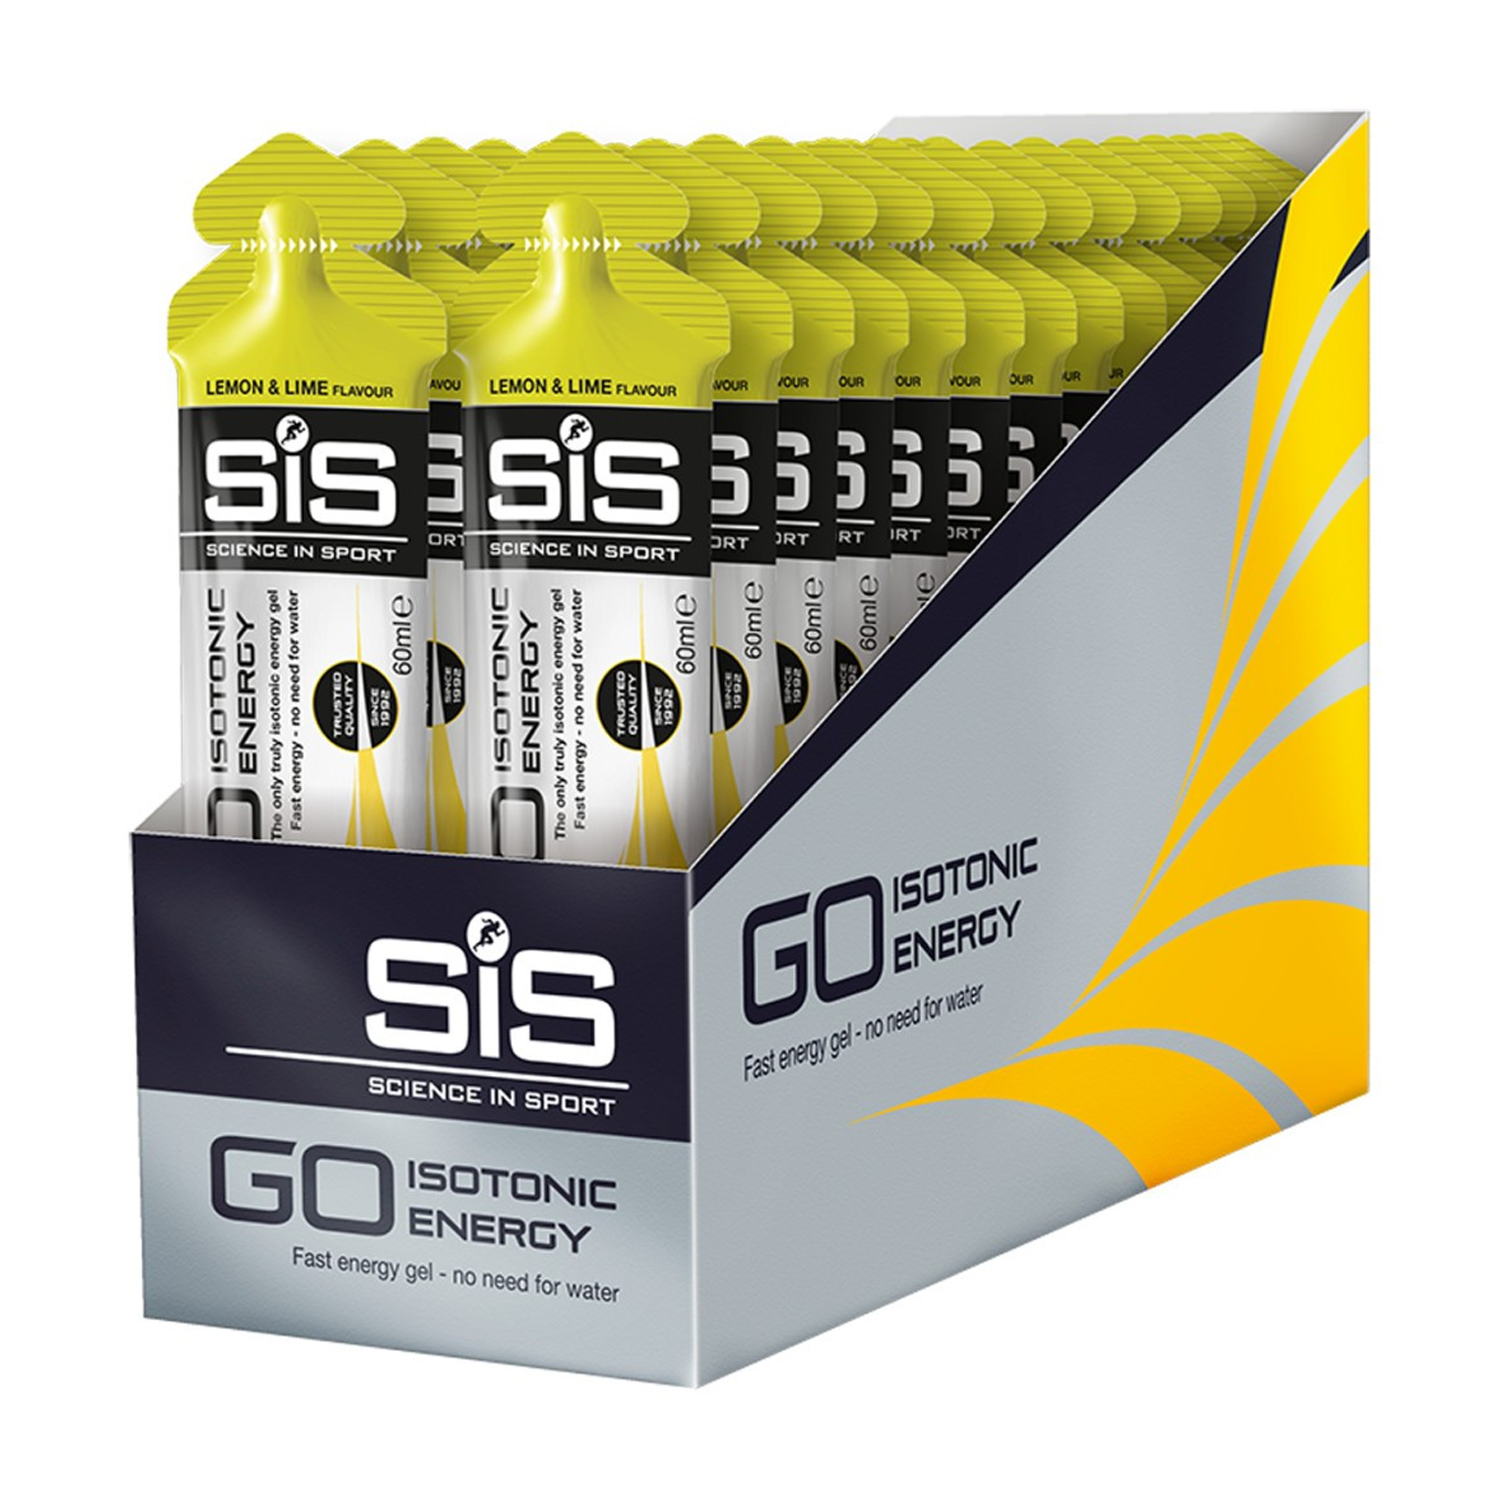 SIS go energy gel 30 pack lemon & lime